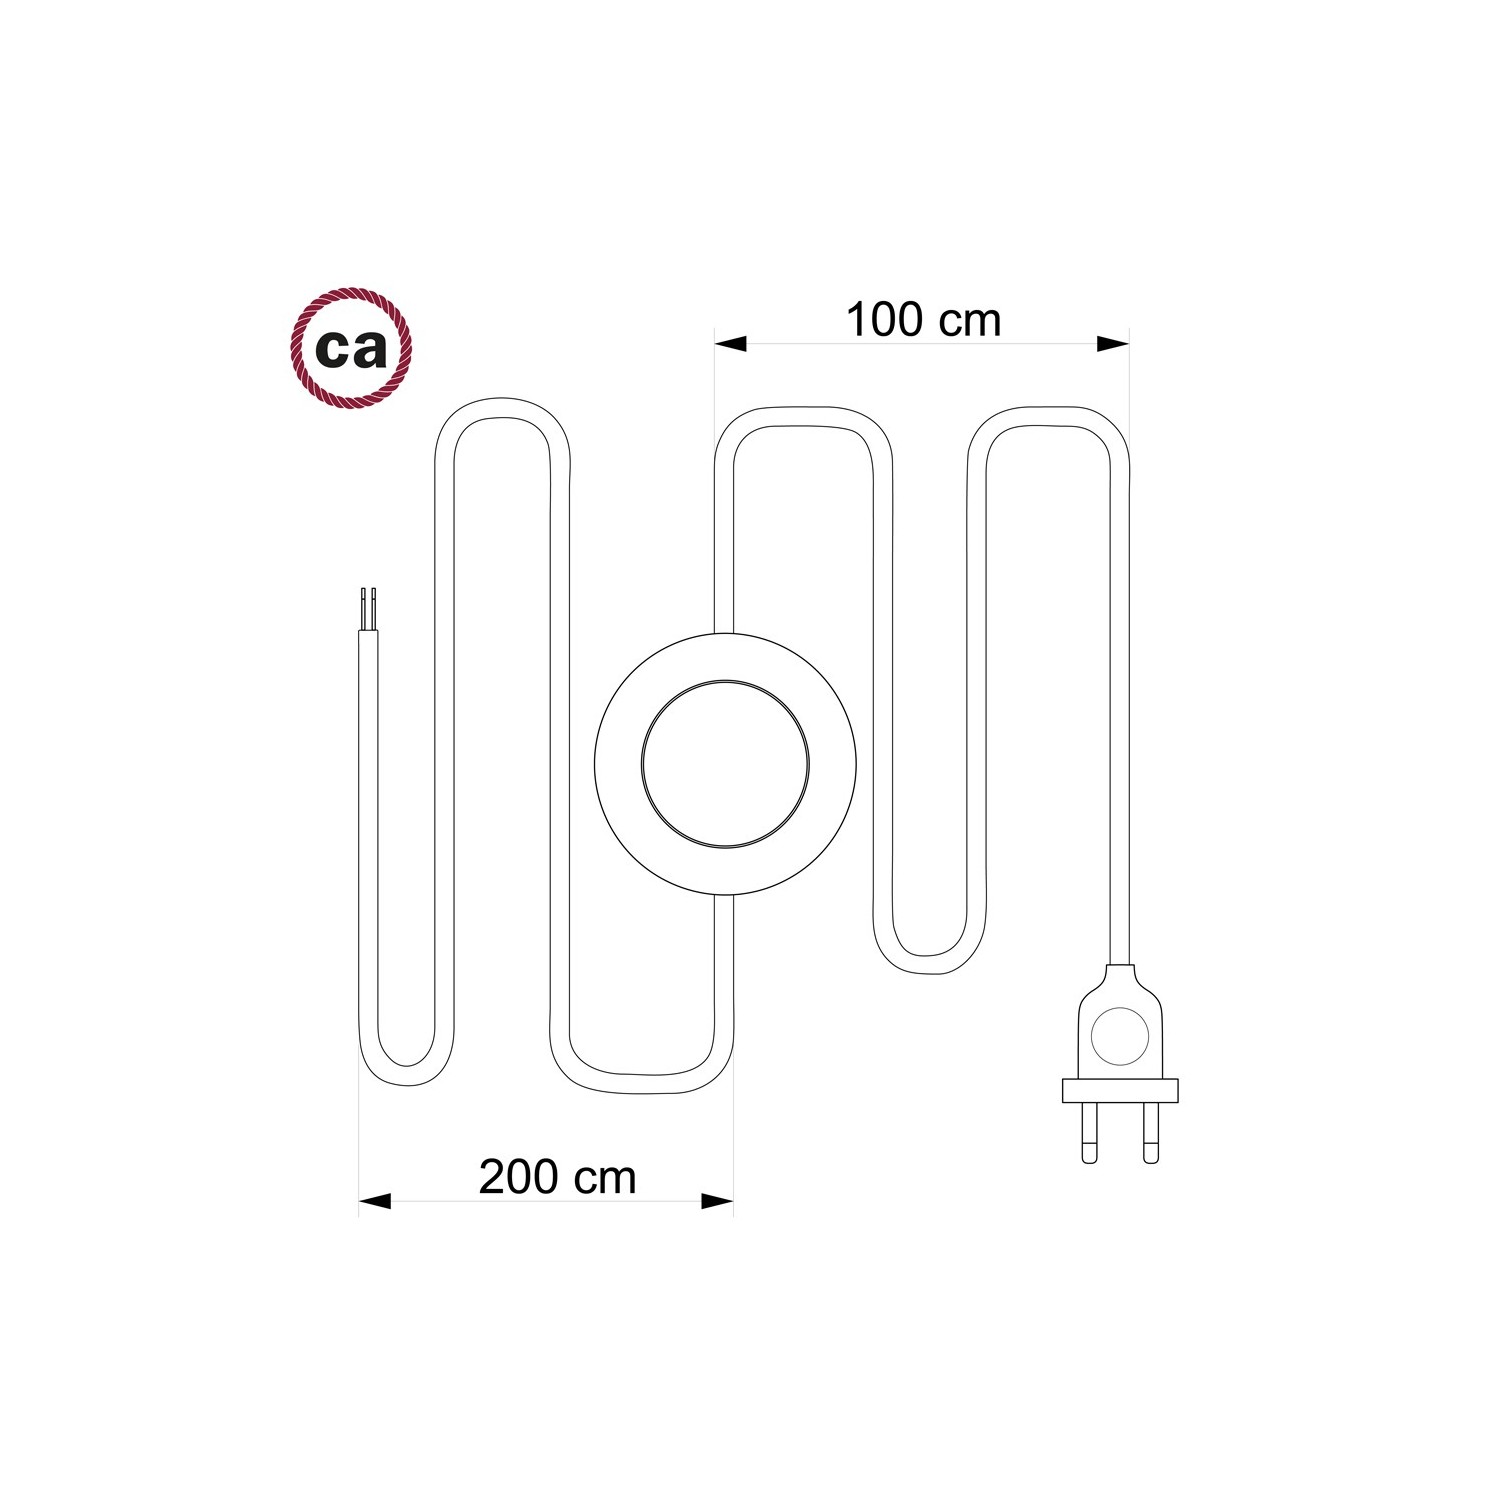 Cordon pour lampadaire, câble TM00 Effet Soie Ivoire 3 m. Choisissez la couleur de la fiche et de l'interrupteur!